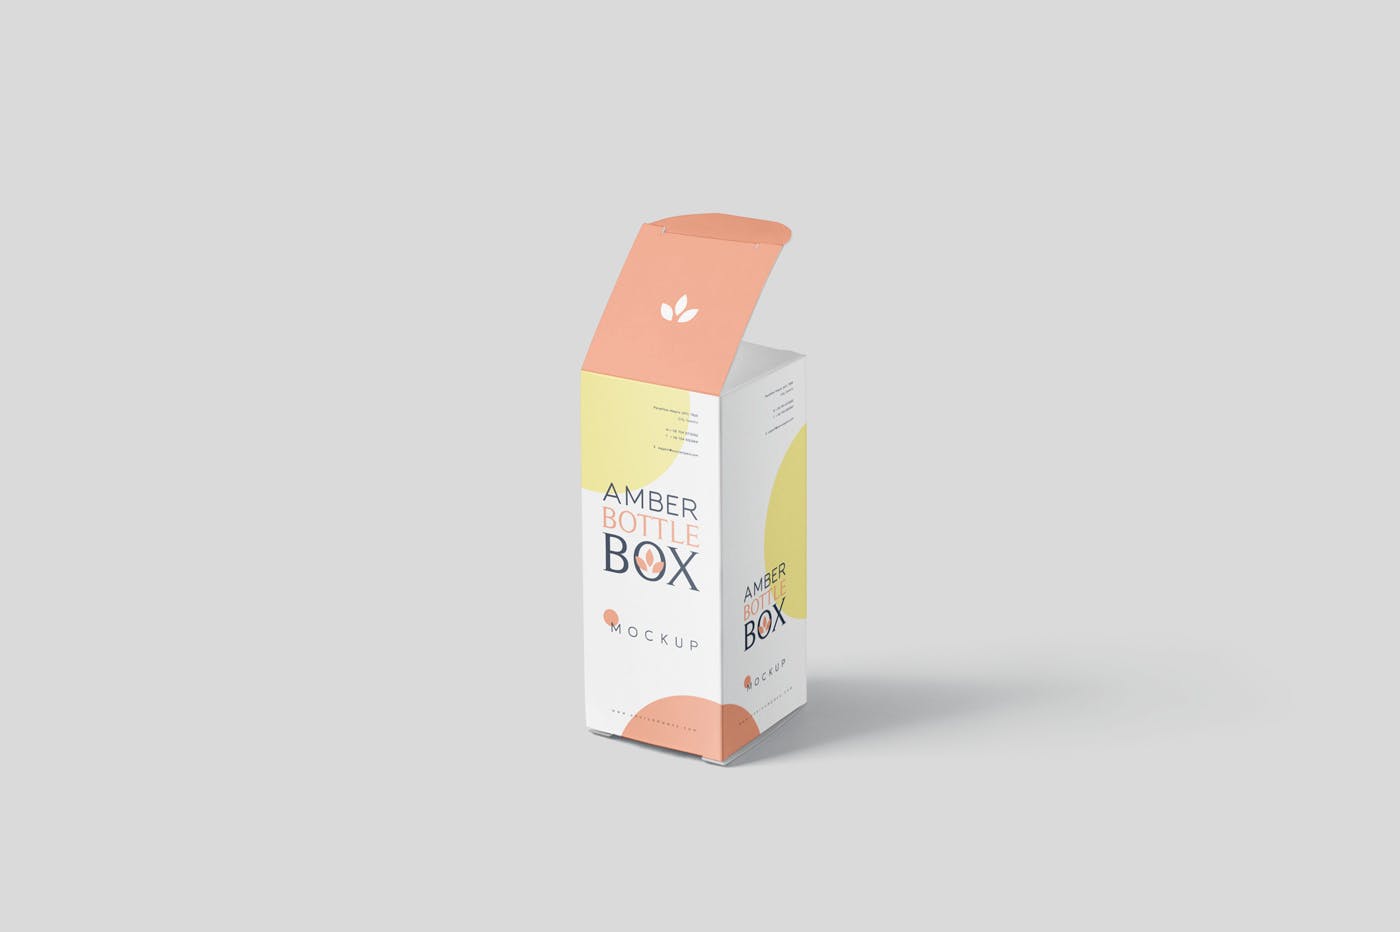 药物瓶&包装纸盒设计图素材中国精选模板 Amber Bottle Box Mockup Set插图(5)